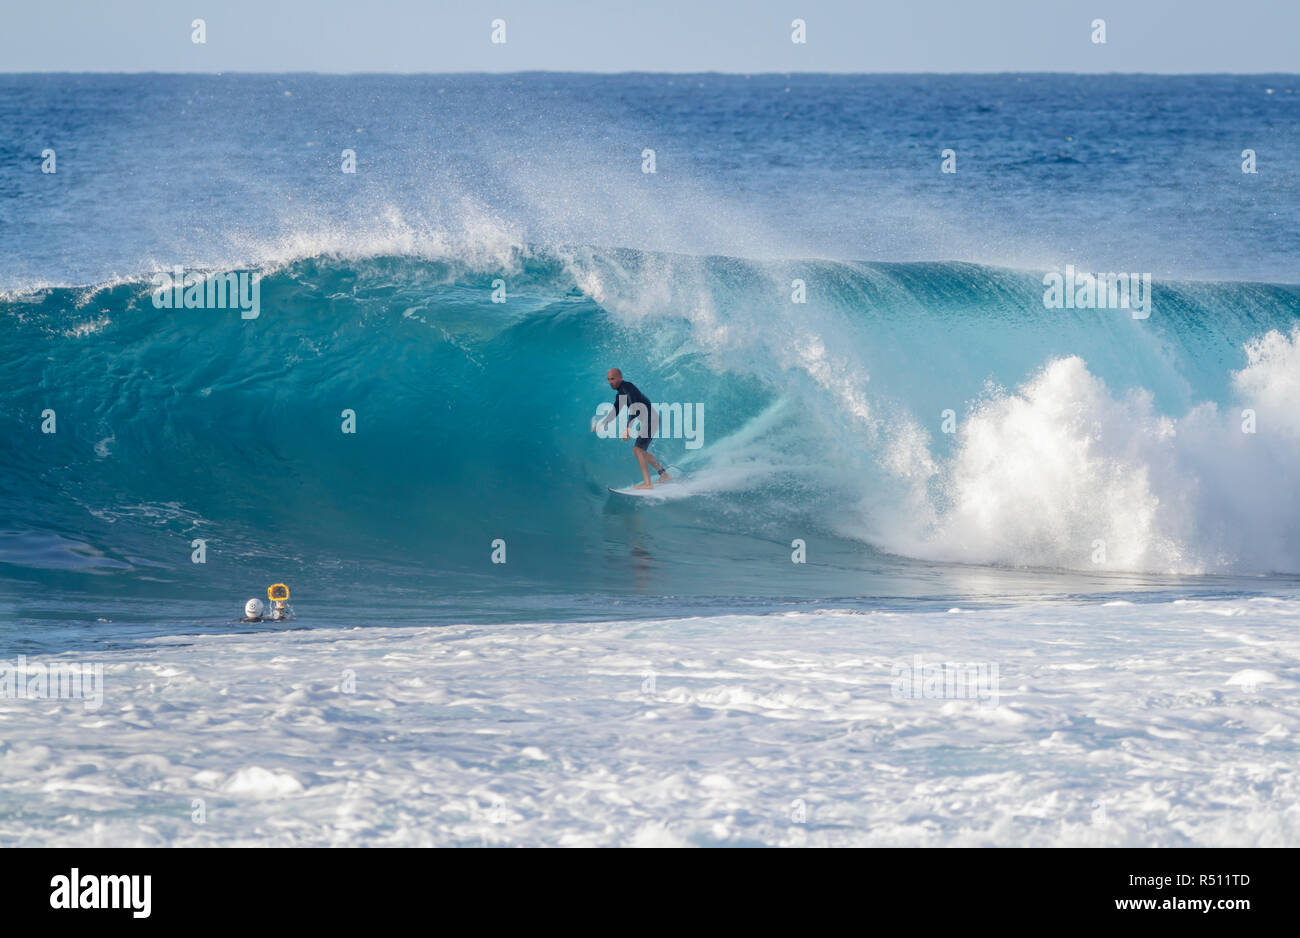 1/08/18, Hale'iwa Hawaii: Kelly Slater von surf Fotografen Surfen eine Welle erfasst Stockfoto